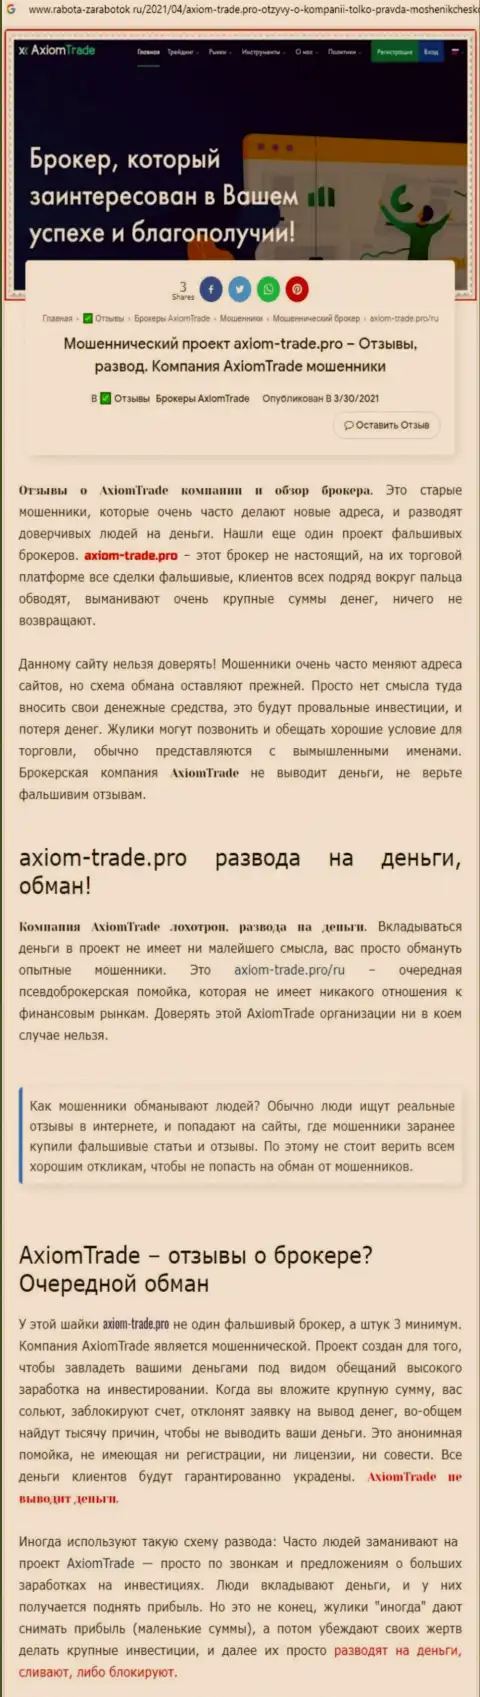 В конторе Axiom-Trade Pro обманывают - факты противозаконных деяний (обзор организации)